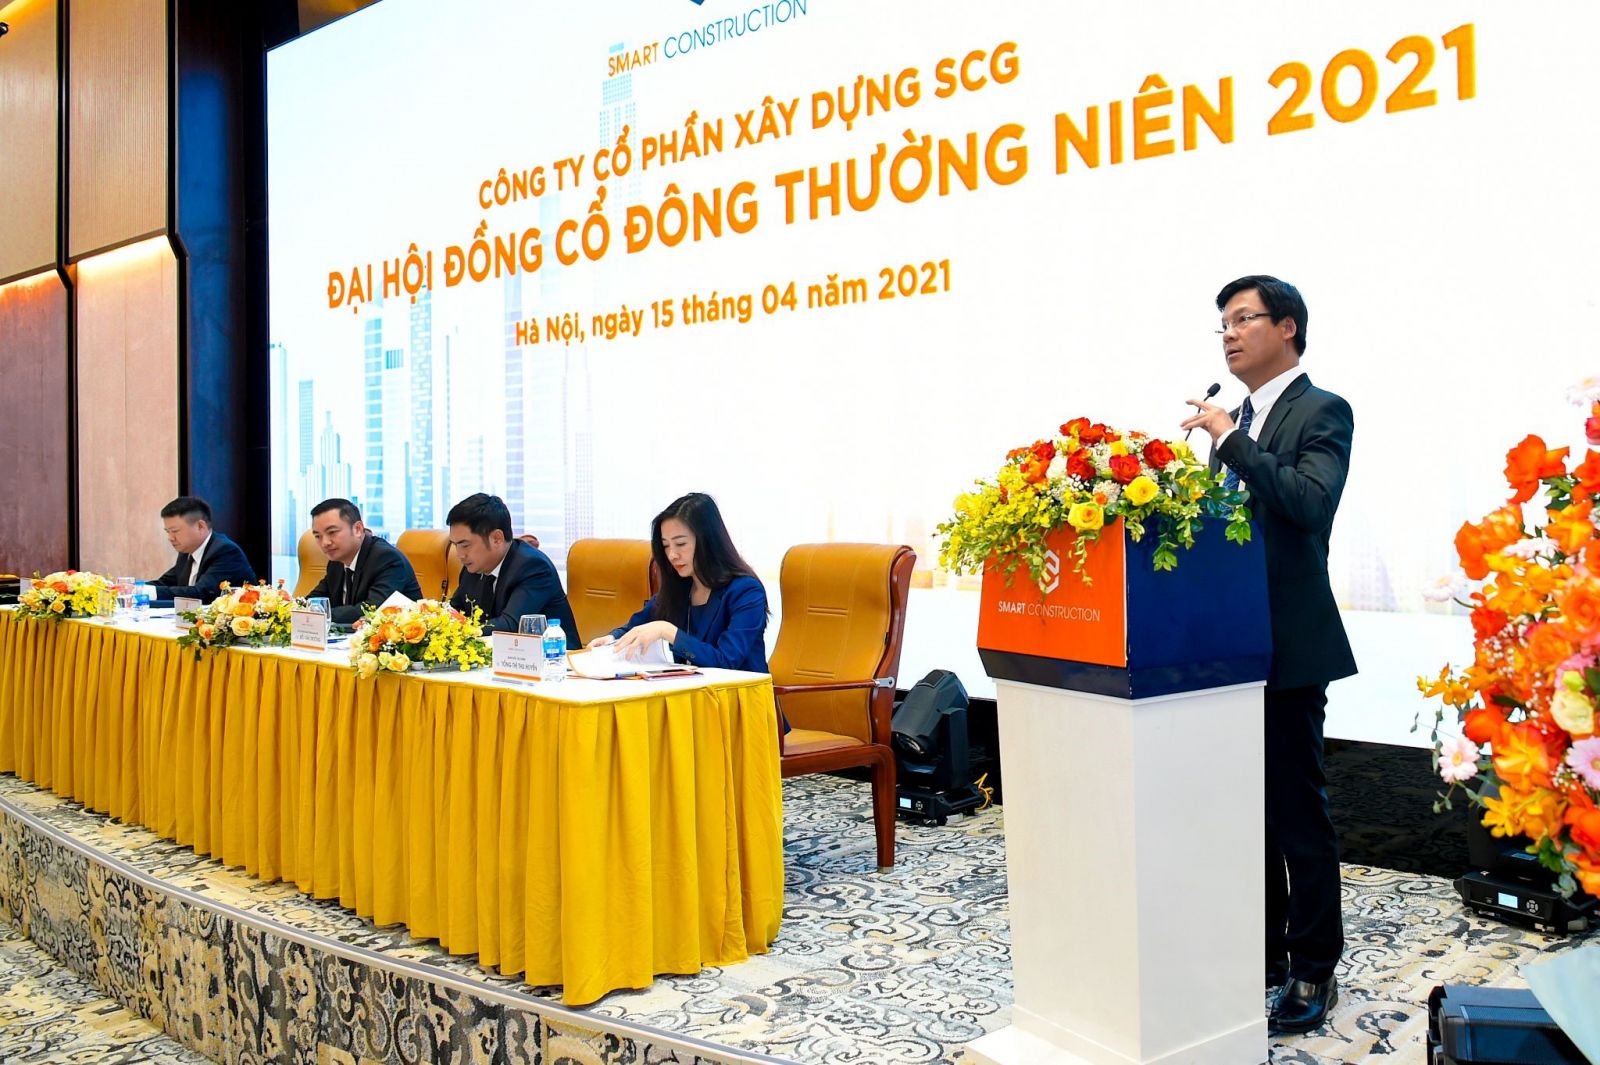 Ông Lê Văn Nam - Tổng Giám Đốc SCG, đại diện Ban điều hành công ty bày tỏ quyết tâm đạt được các mục tiêu tăng trưởng lợi nhuận và đẩy mạnh đầu tư trong năm 2021